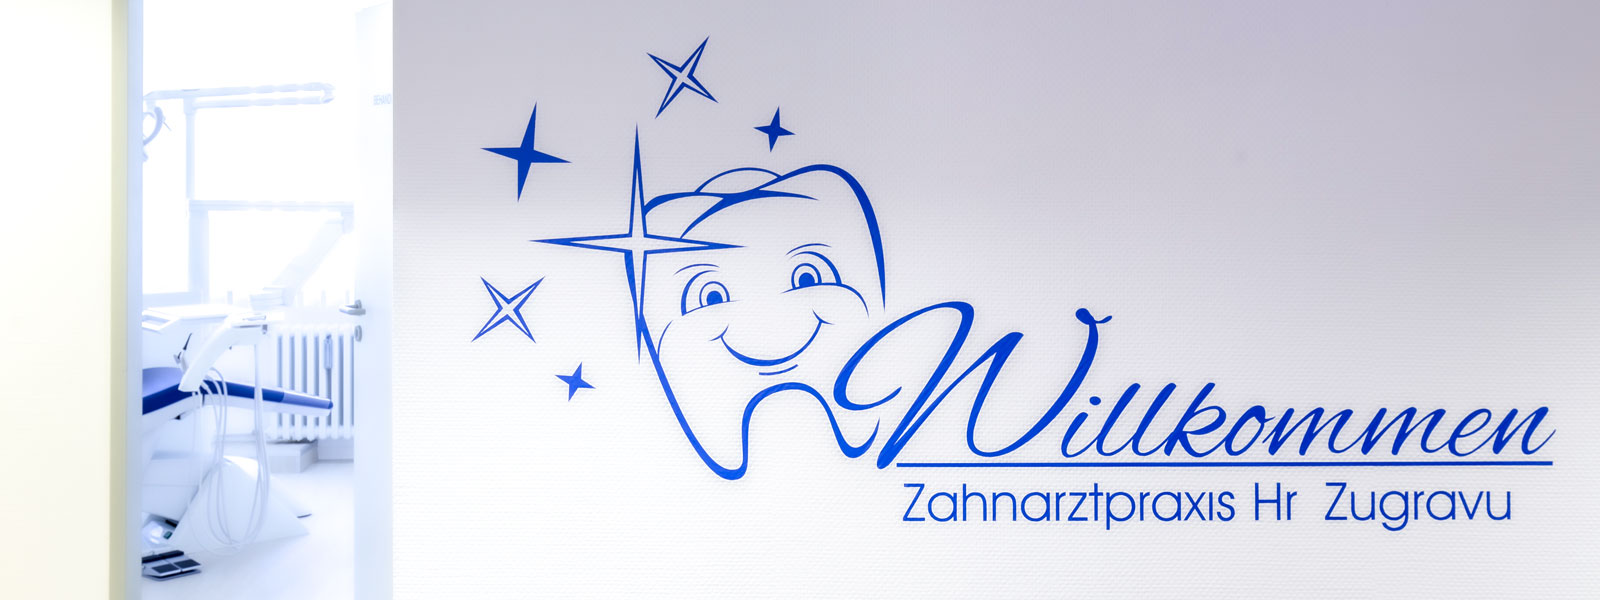 Zahnarzt Zugravu Würzburg